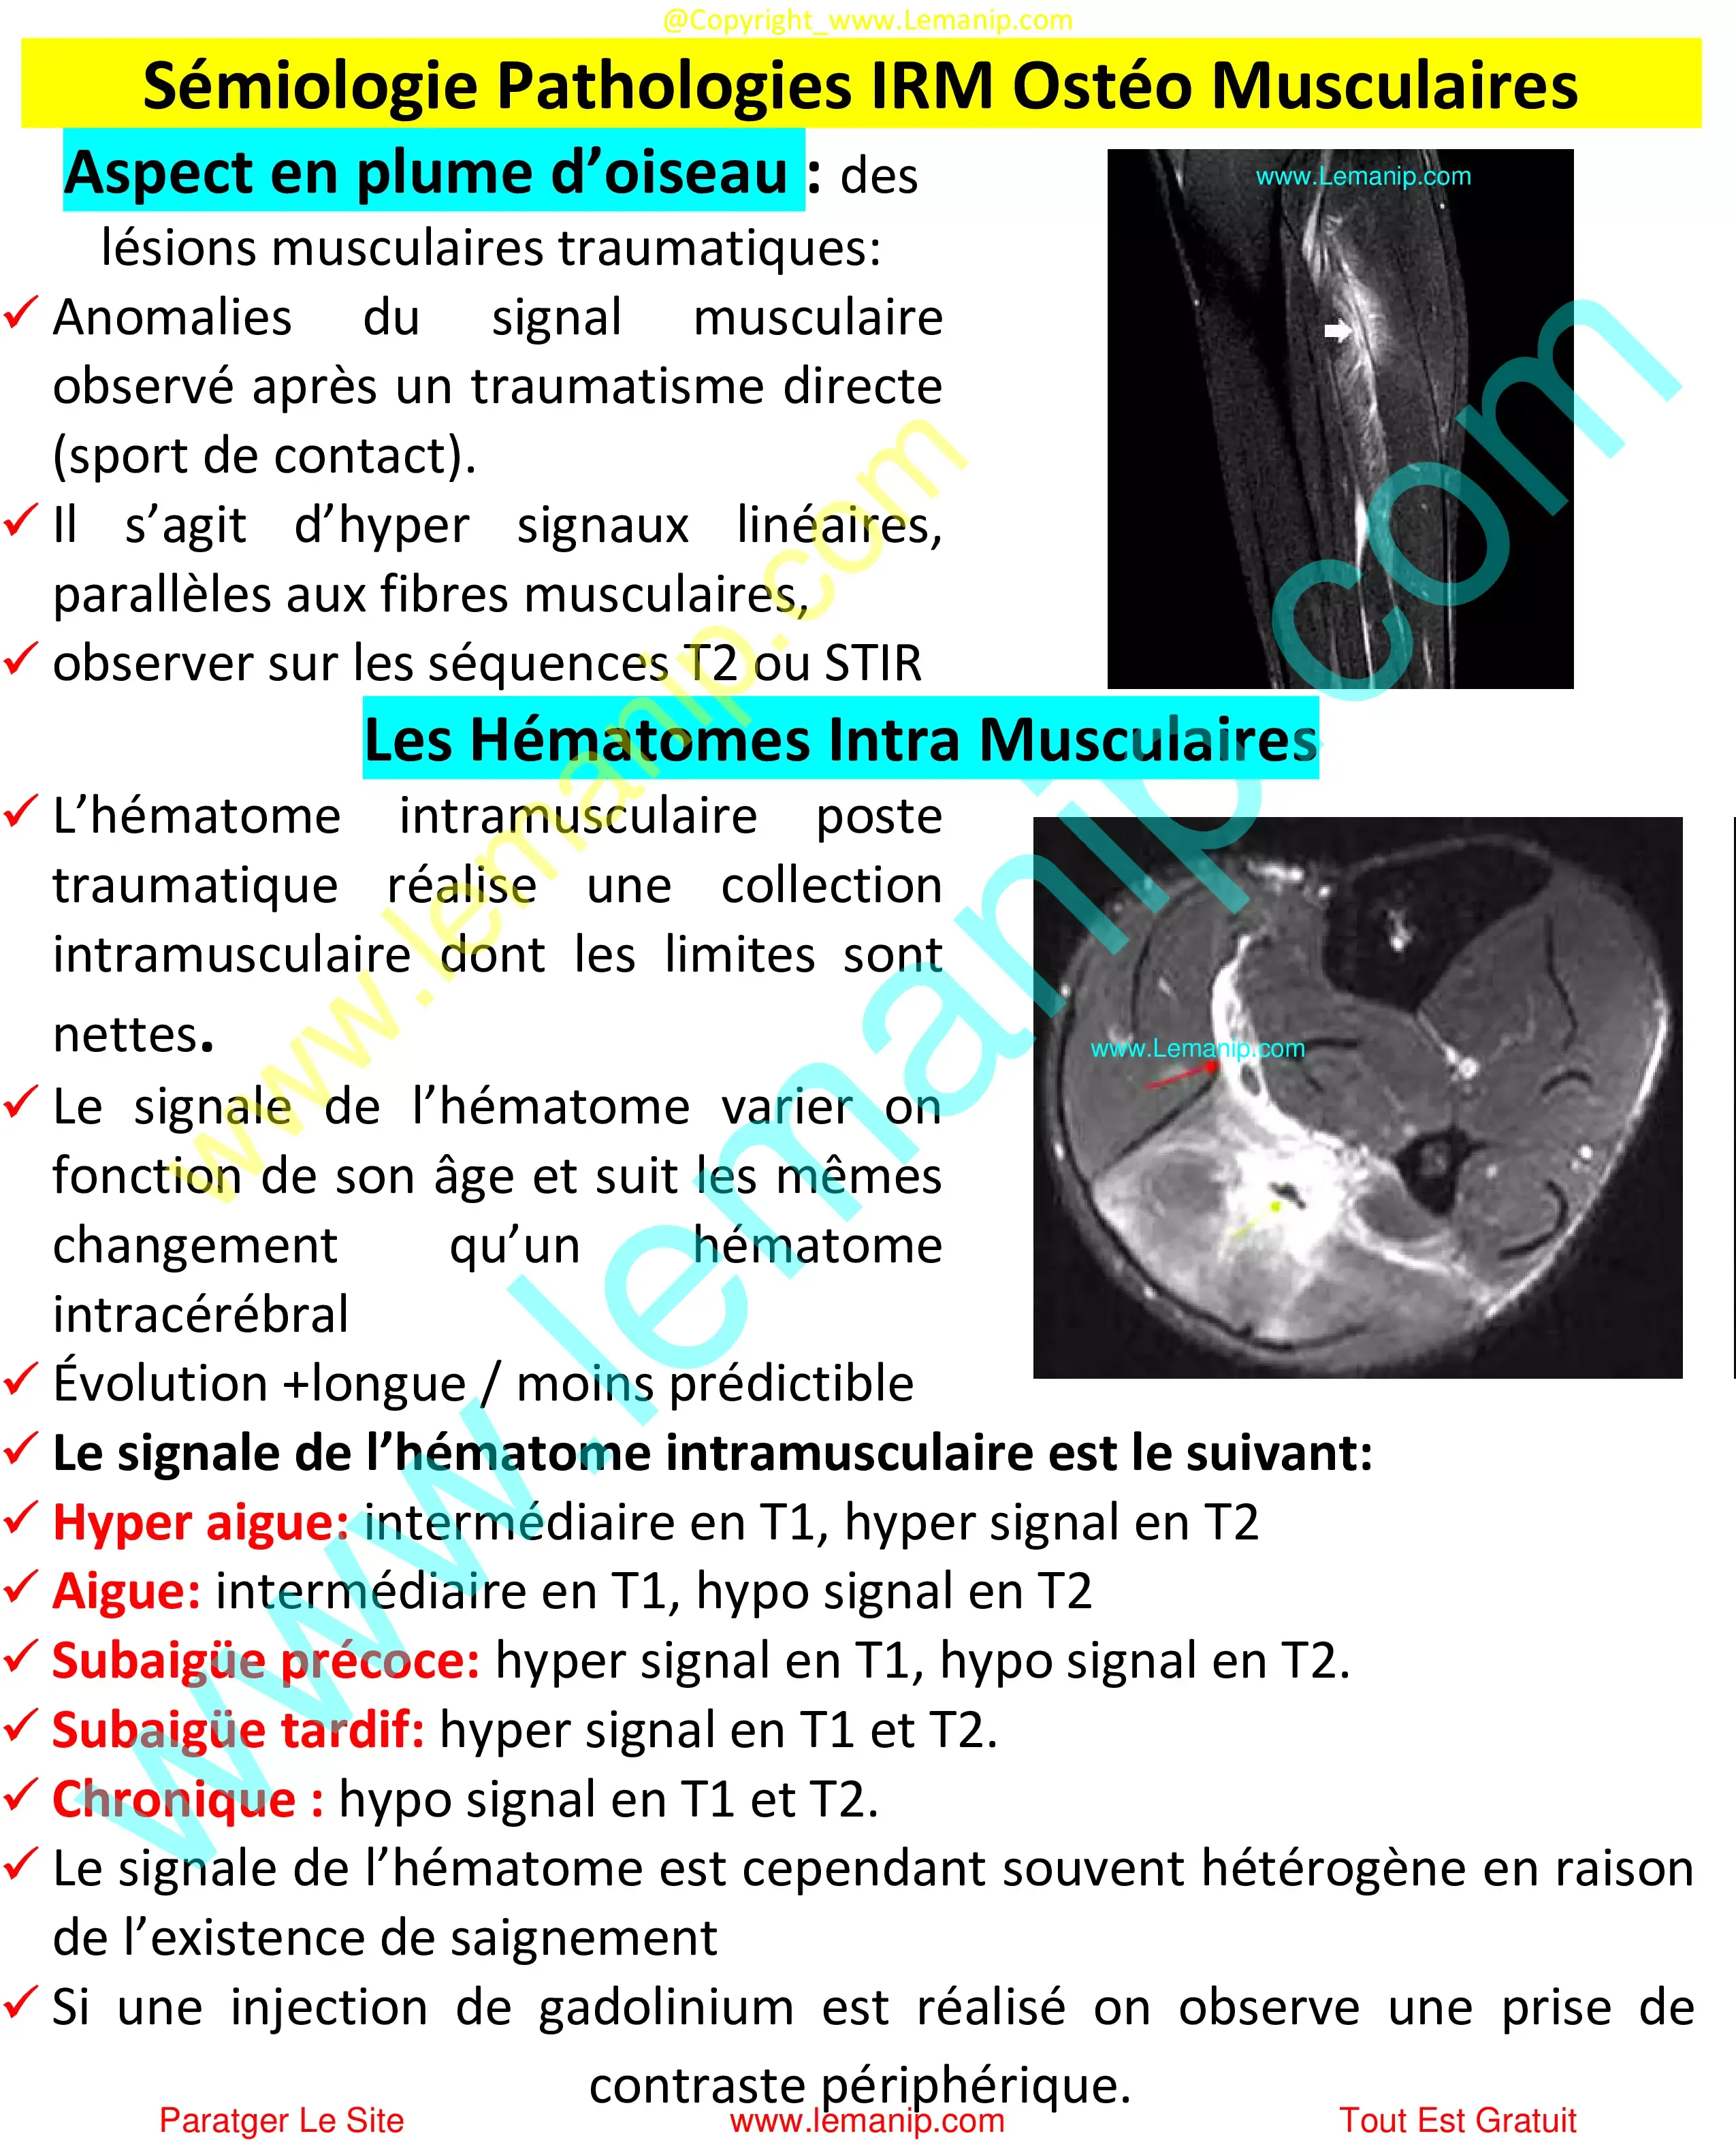 Sémiologie Pathologies IRM Ostéo Musculaires